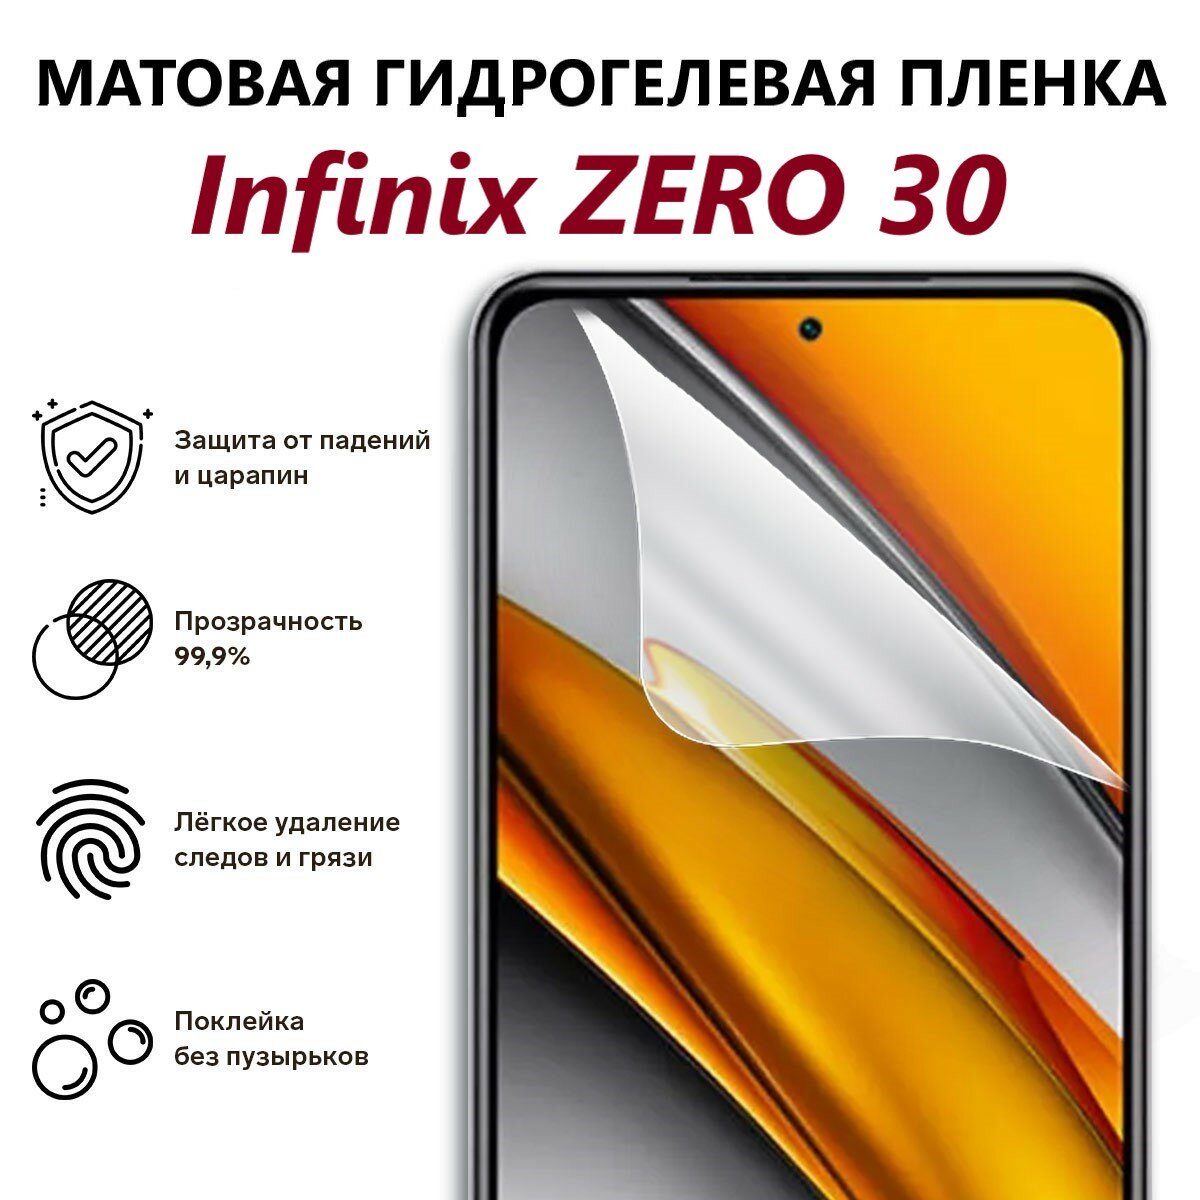 Матовая гидрогелевая пленка для Infinix ZERO 30 4G / Полноэкранная защита телефона